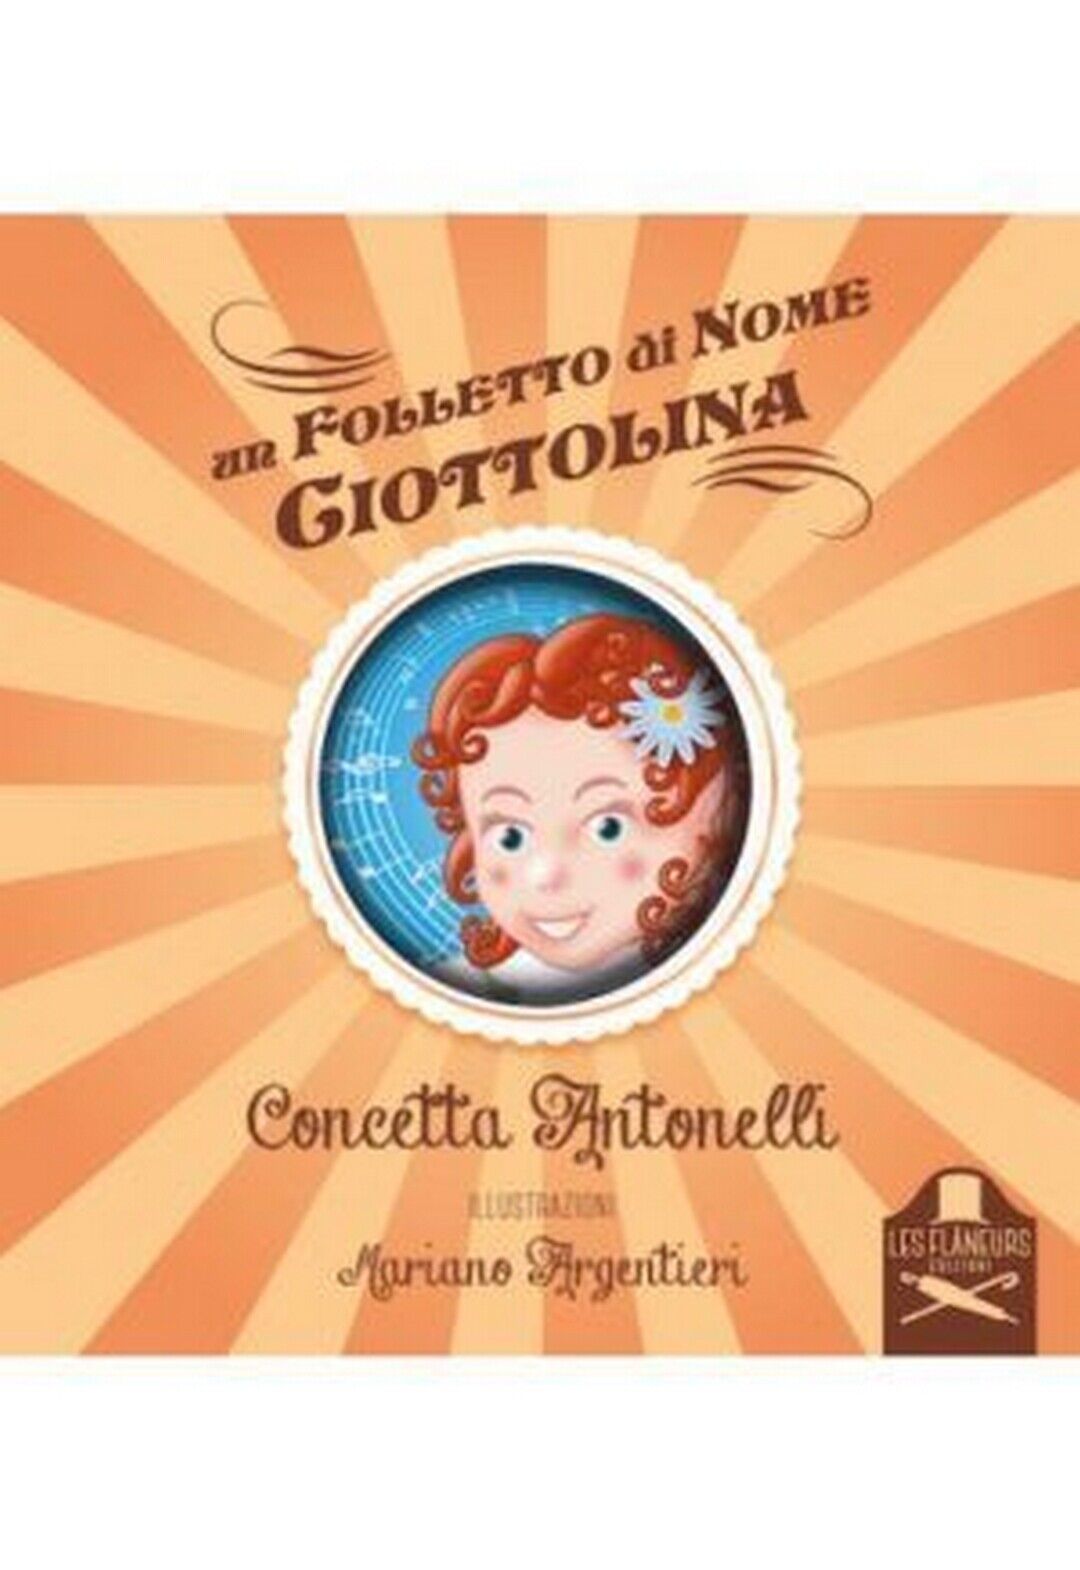 Un folletto di nome Ciottolina  di Concetta Antonelli ,  Flaneurs